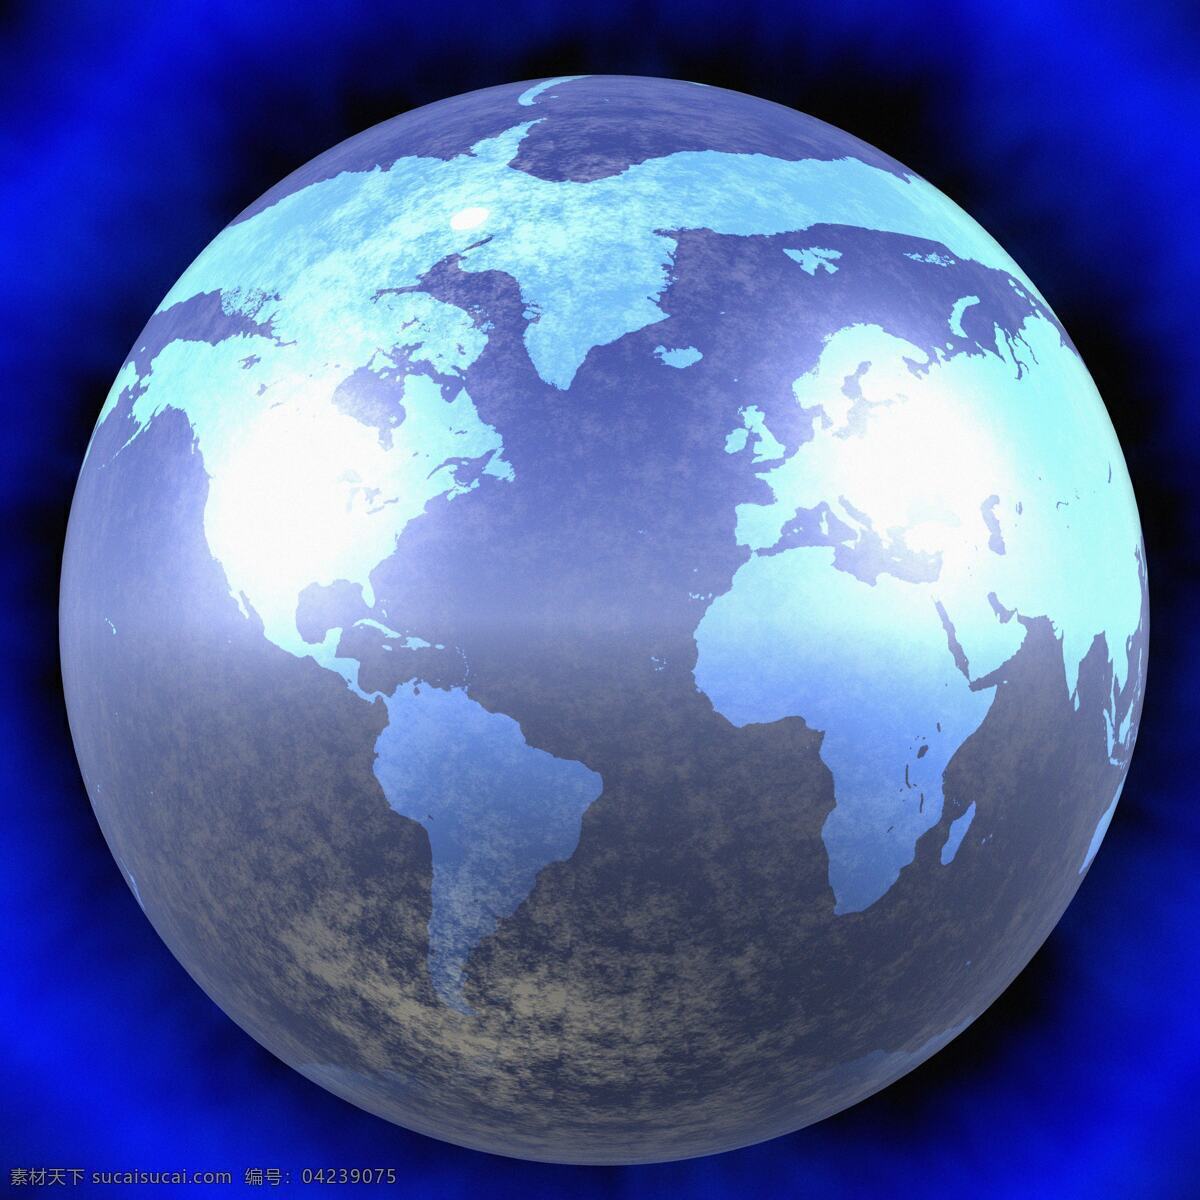 抽象 创 地球 背景 地球背景 科技 网络 信息 创意 蓝色背景 梦幻 地图 高清地球图片 高清图片 地球图片 环境家居